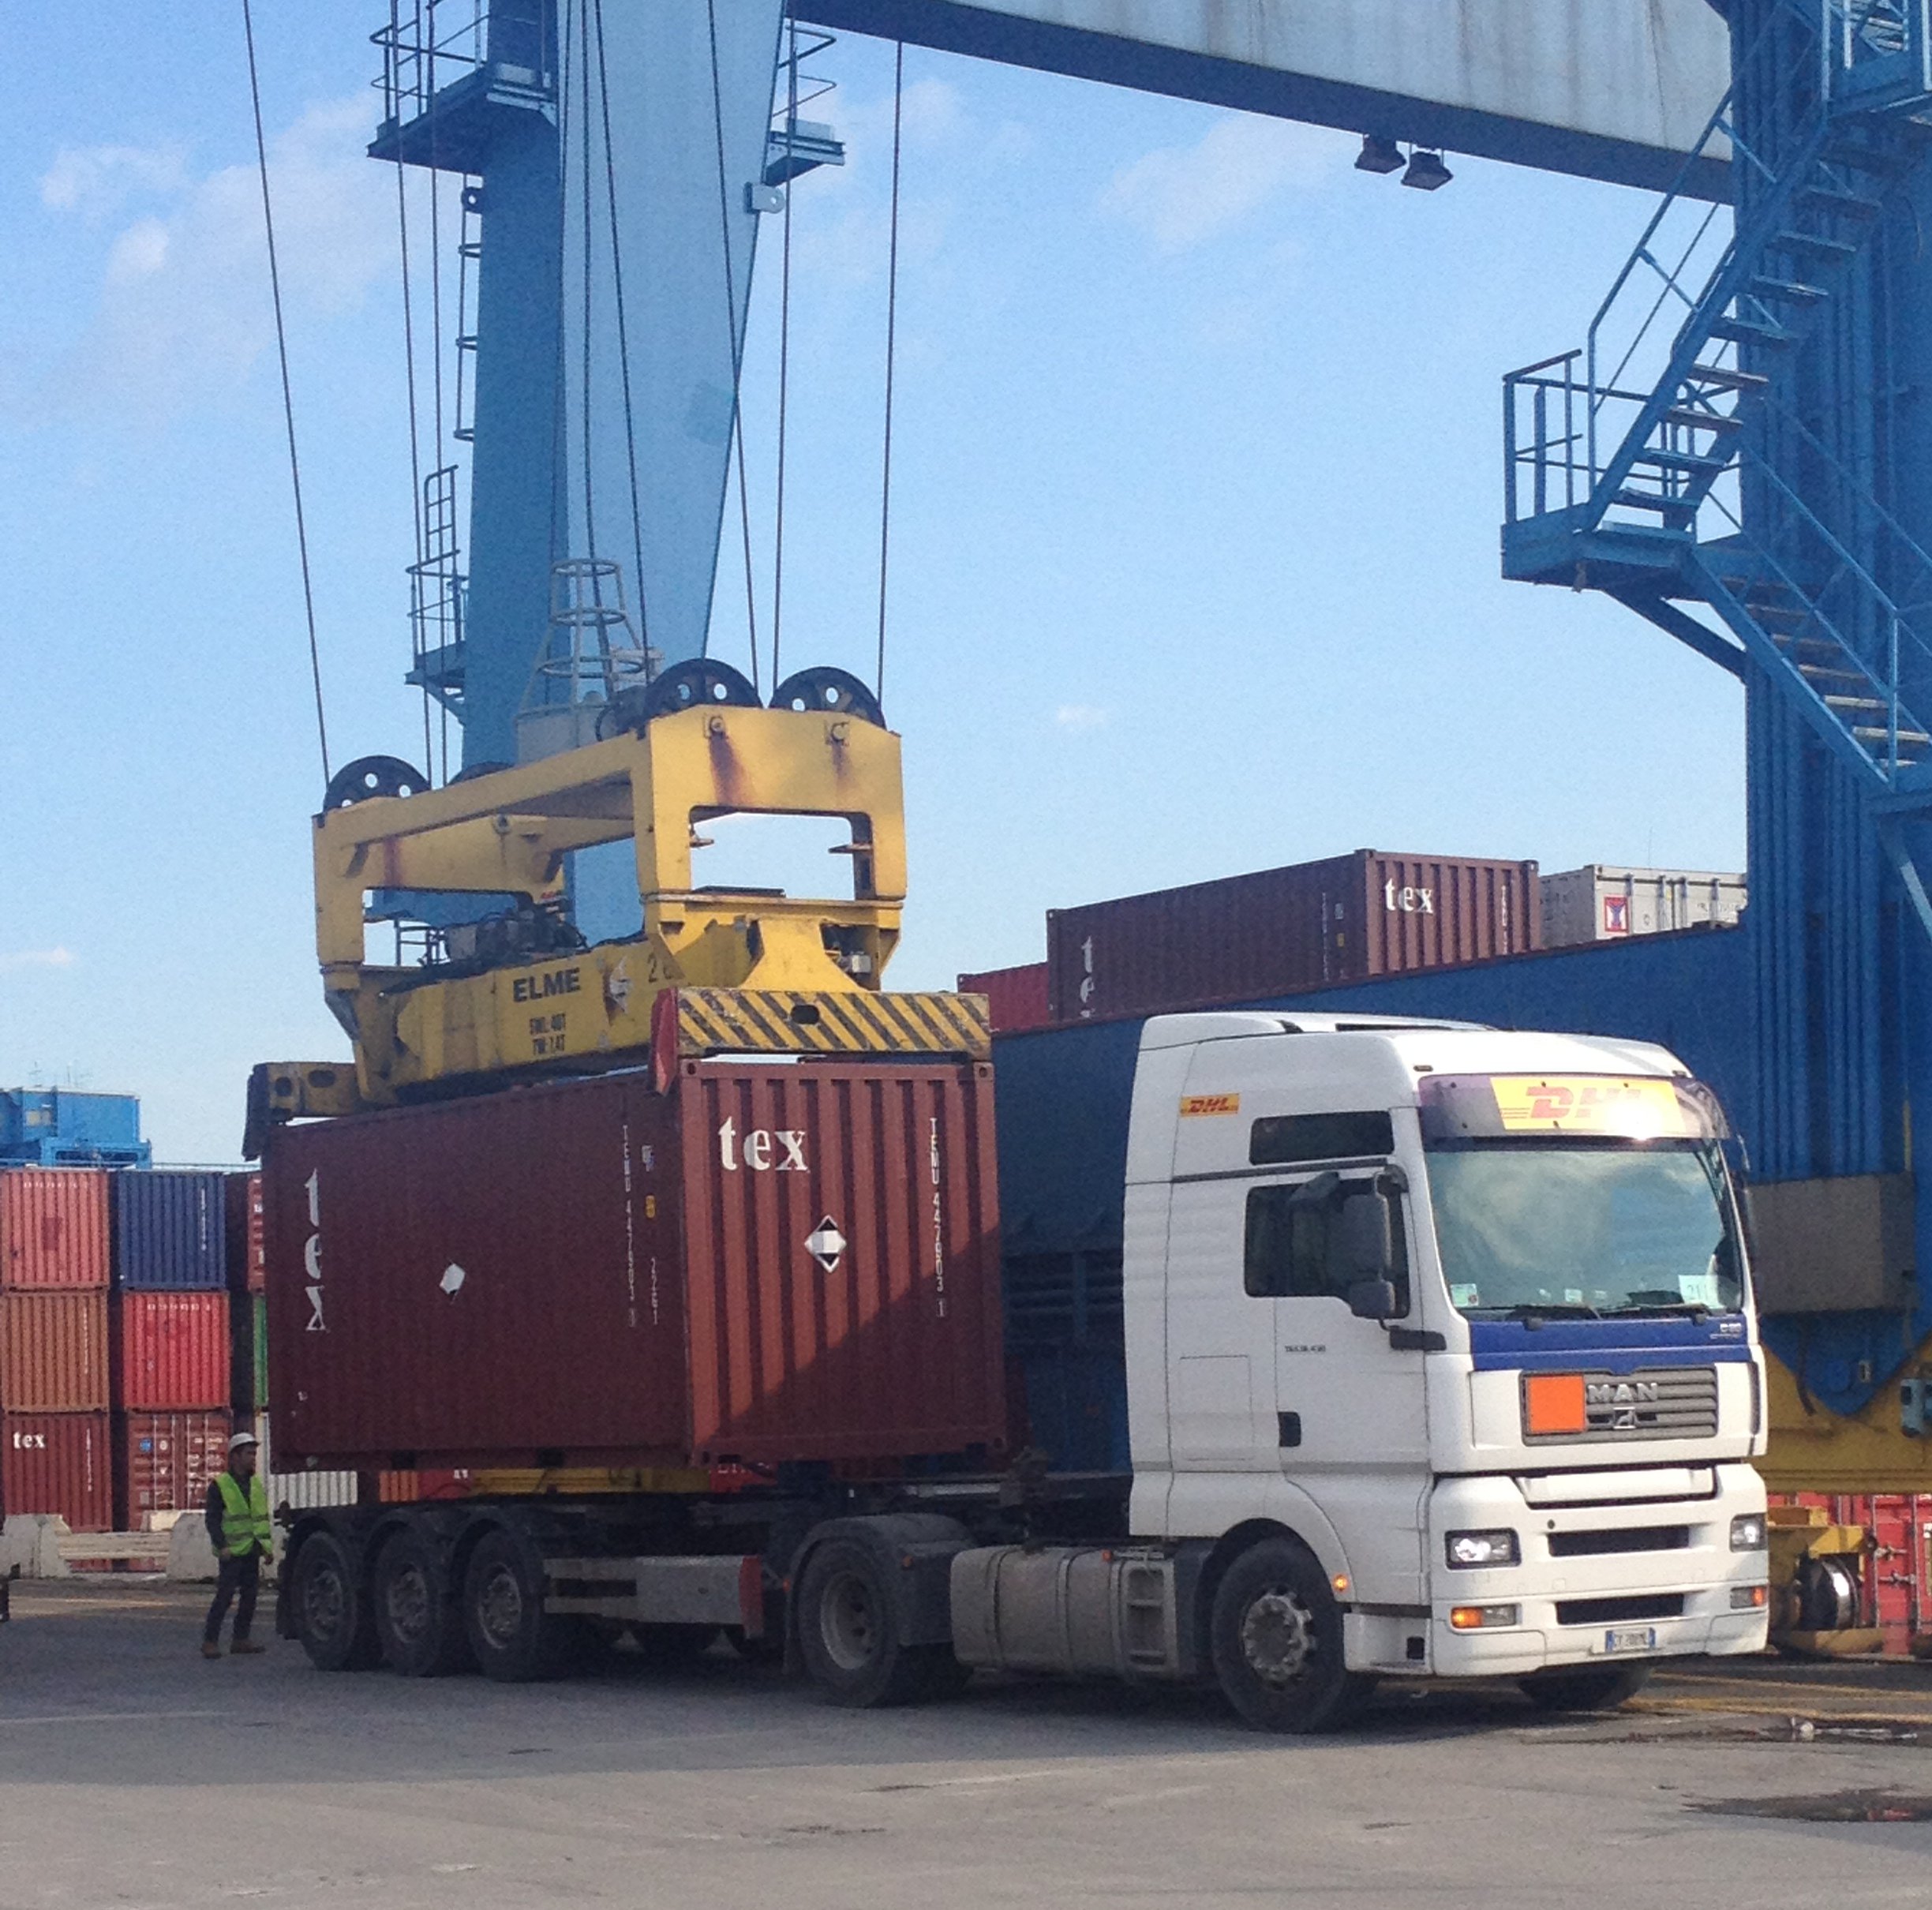 Pesatura dei container: le linee guida nazionali. Fissati i criteri per la fase transitoria.